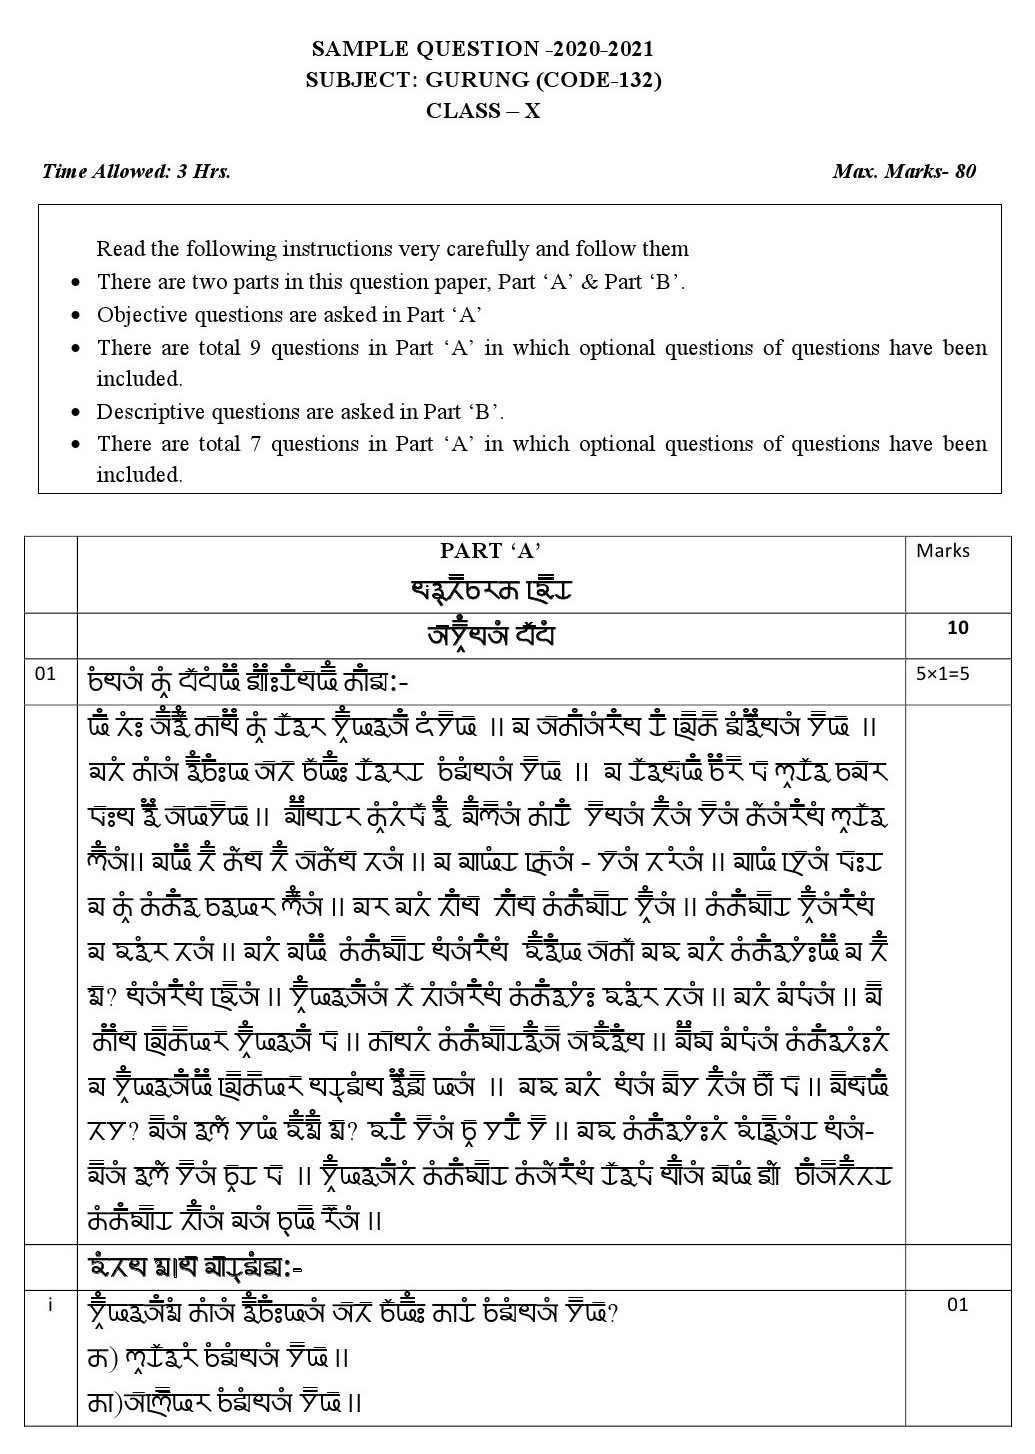 Gurung CBSE Class X Sample Question Paper 2020 21 - Image 1